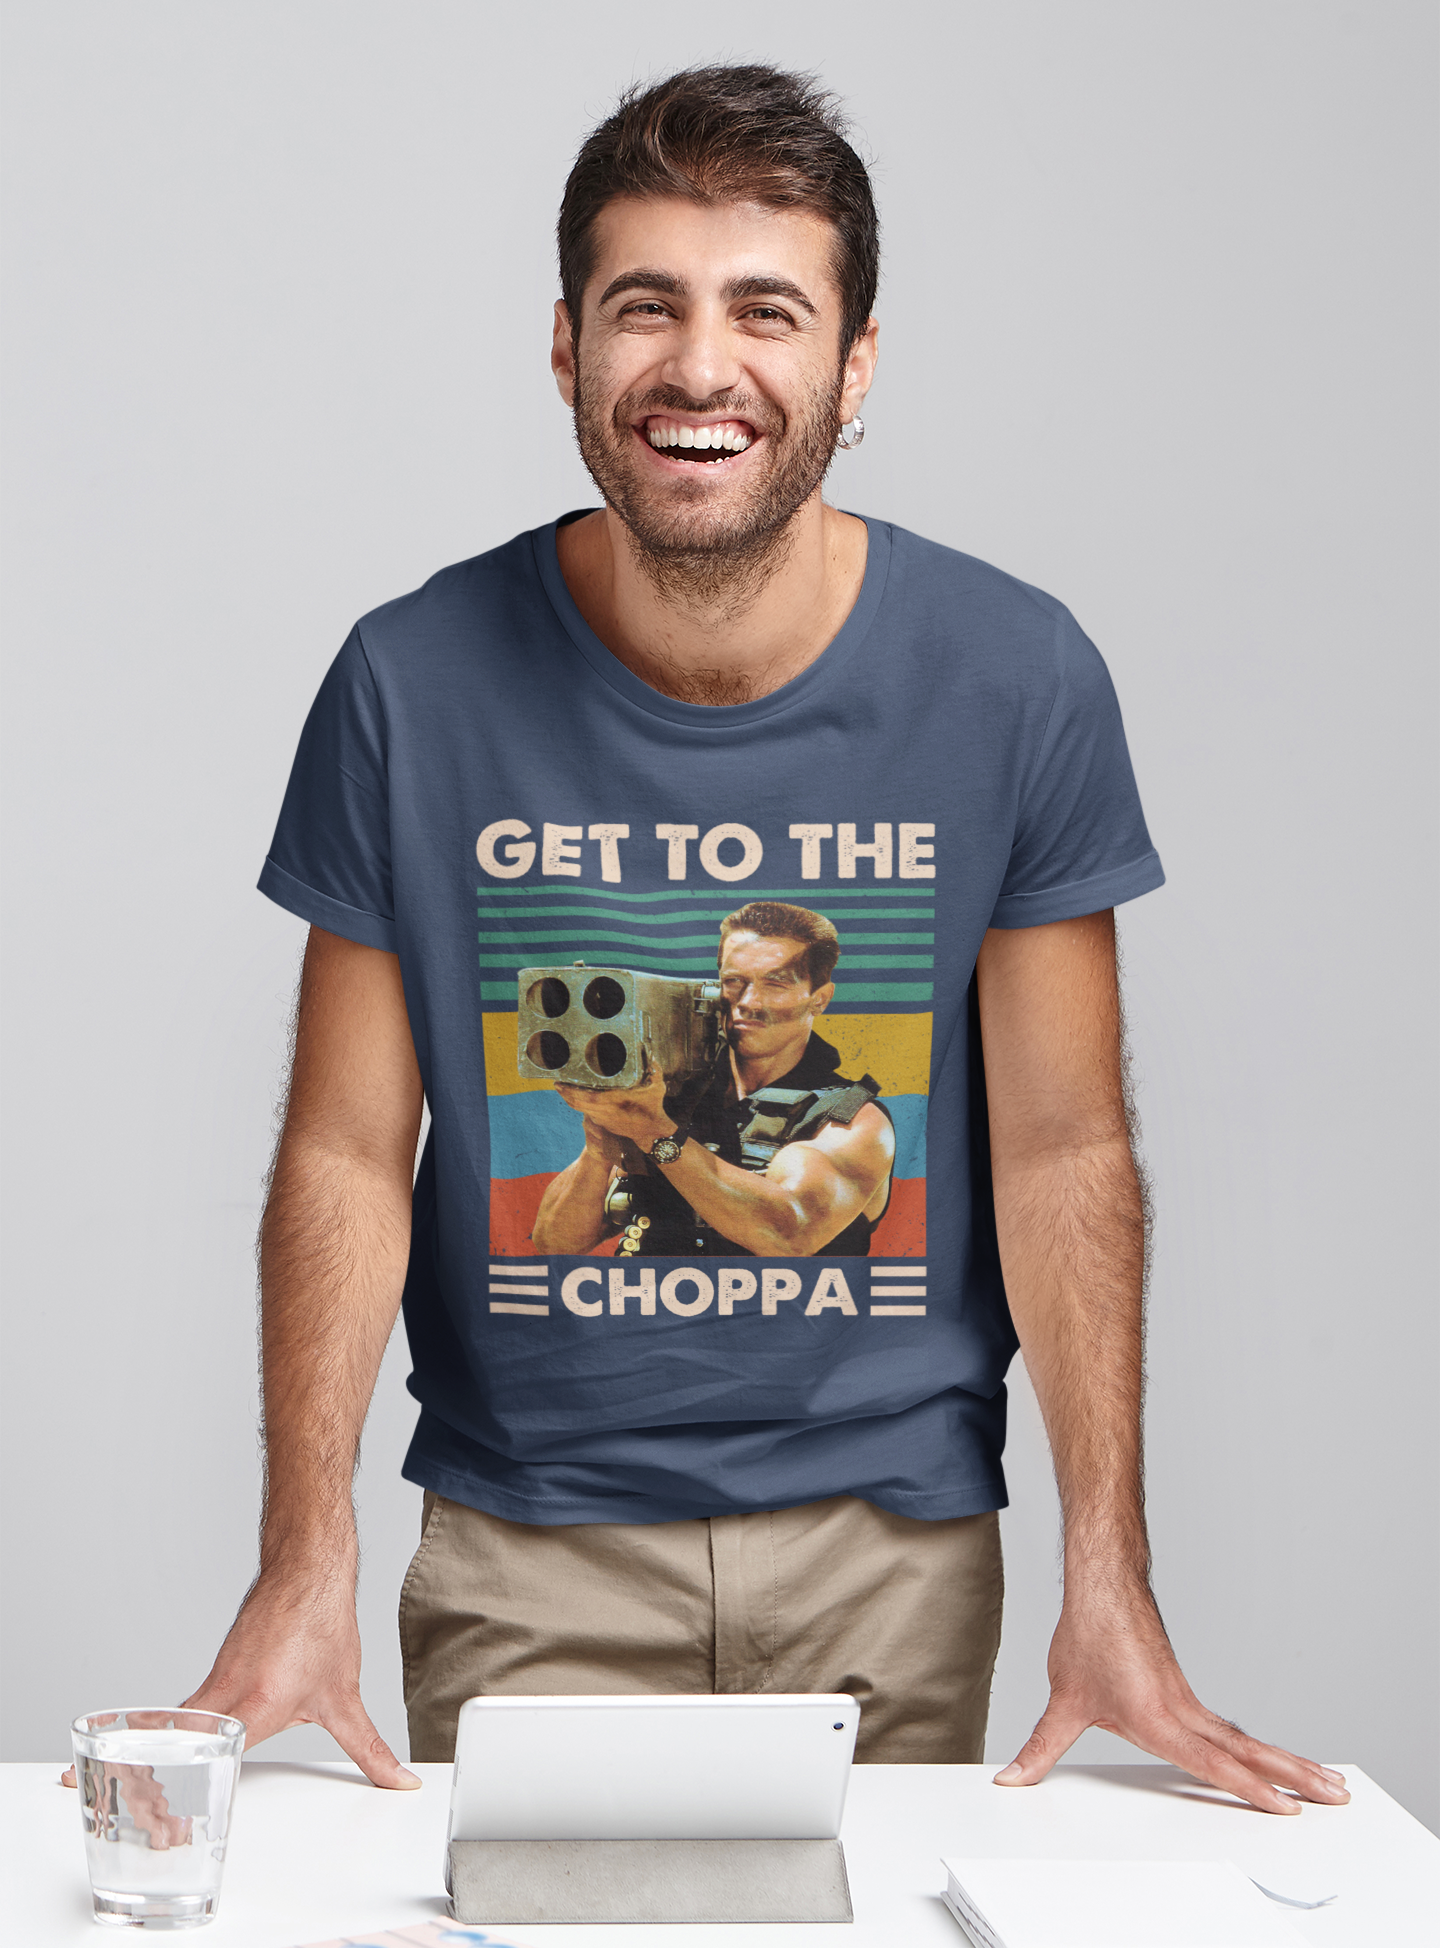 Commando Vintage T Shirt, Get To The Choppa Tshirt, John Matrix T Shirt